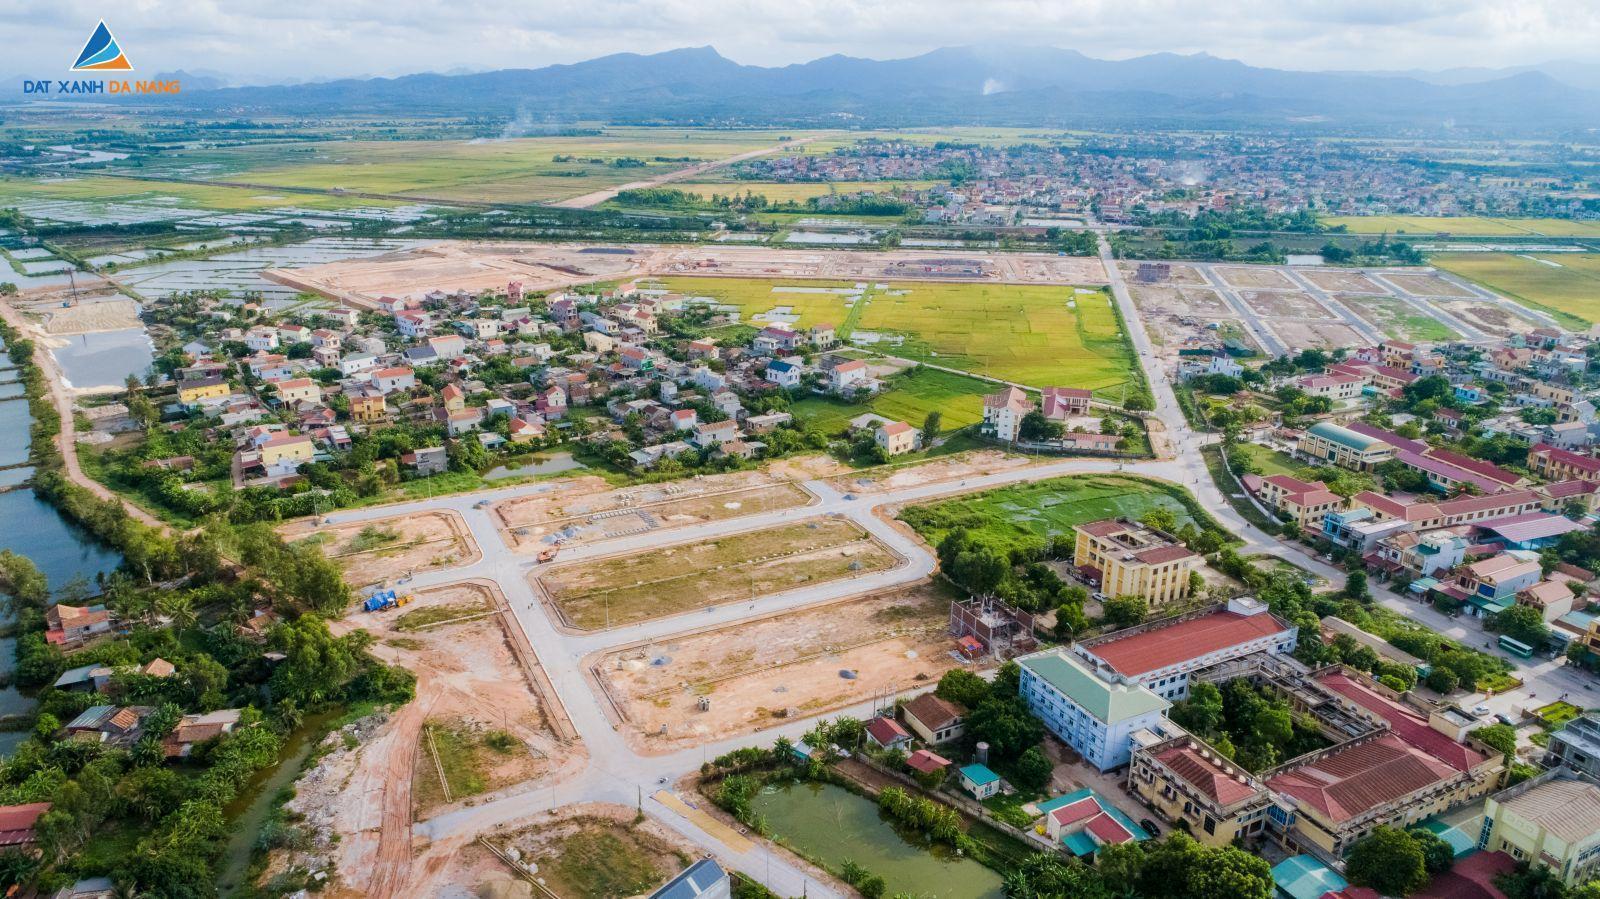 [GÓC CẬP NHẬT] DỰ ÁN KHU DÂN CƯ ĐÔNG NAM LÊ LỢI THÁNG 08/2019 - Viet Nam Smart City